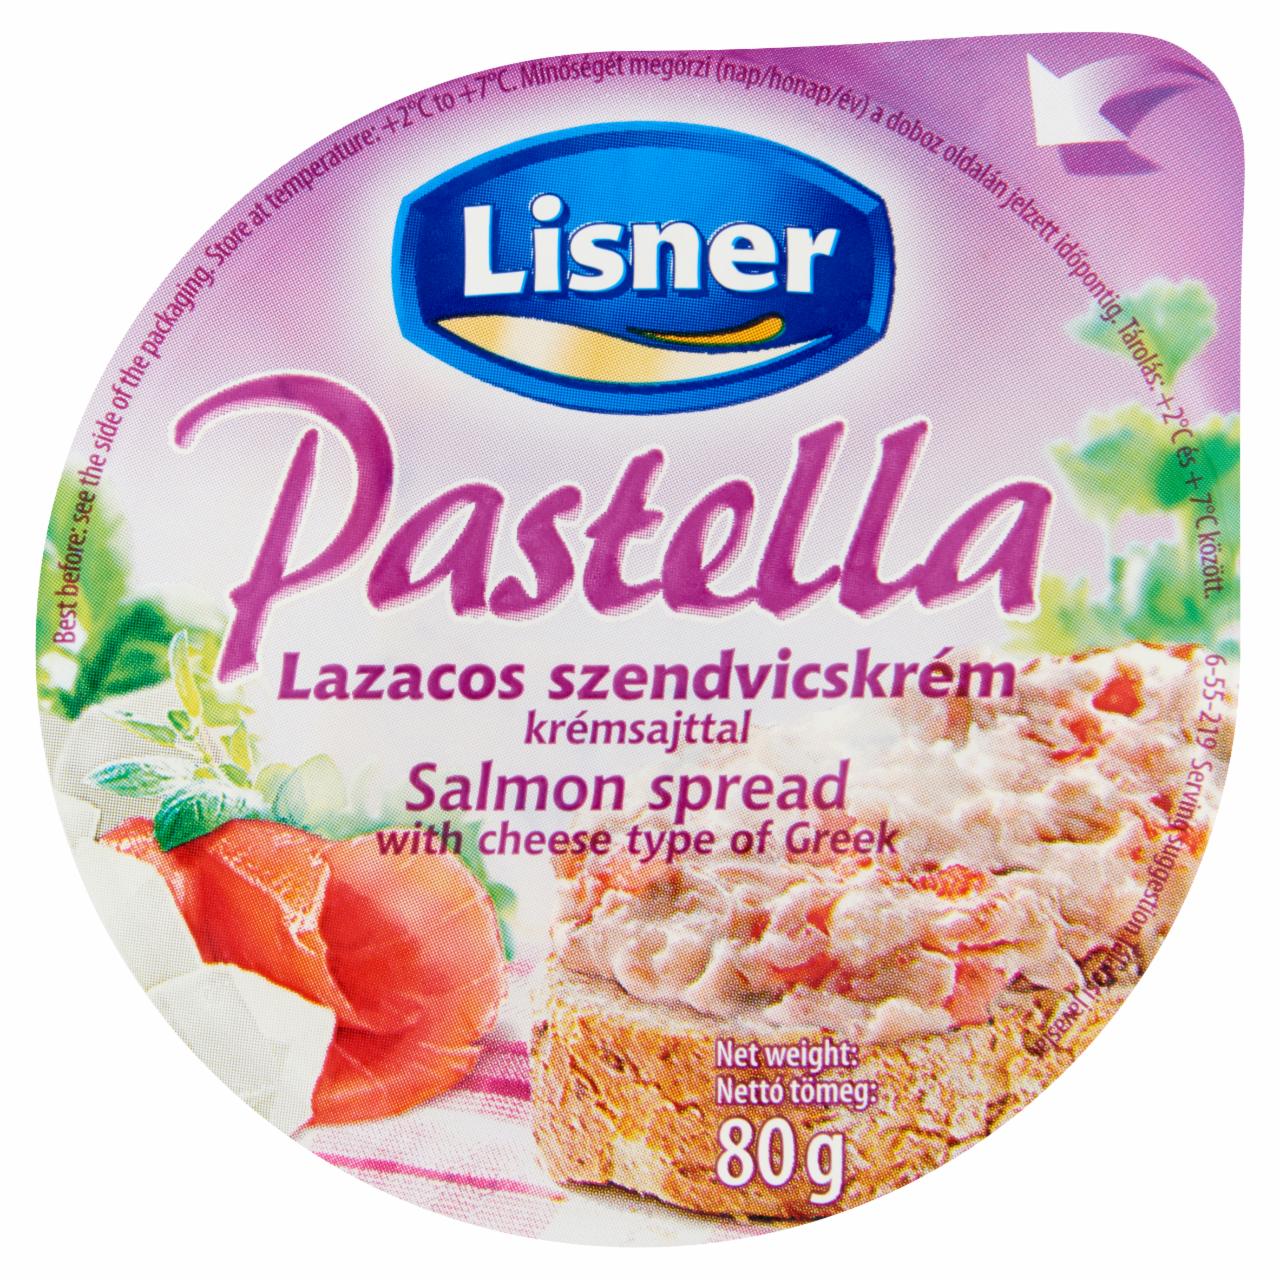 Képek - Lisner lazacos szendvicskrém krémsajttal 80 g